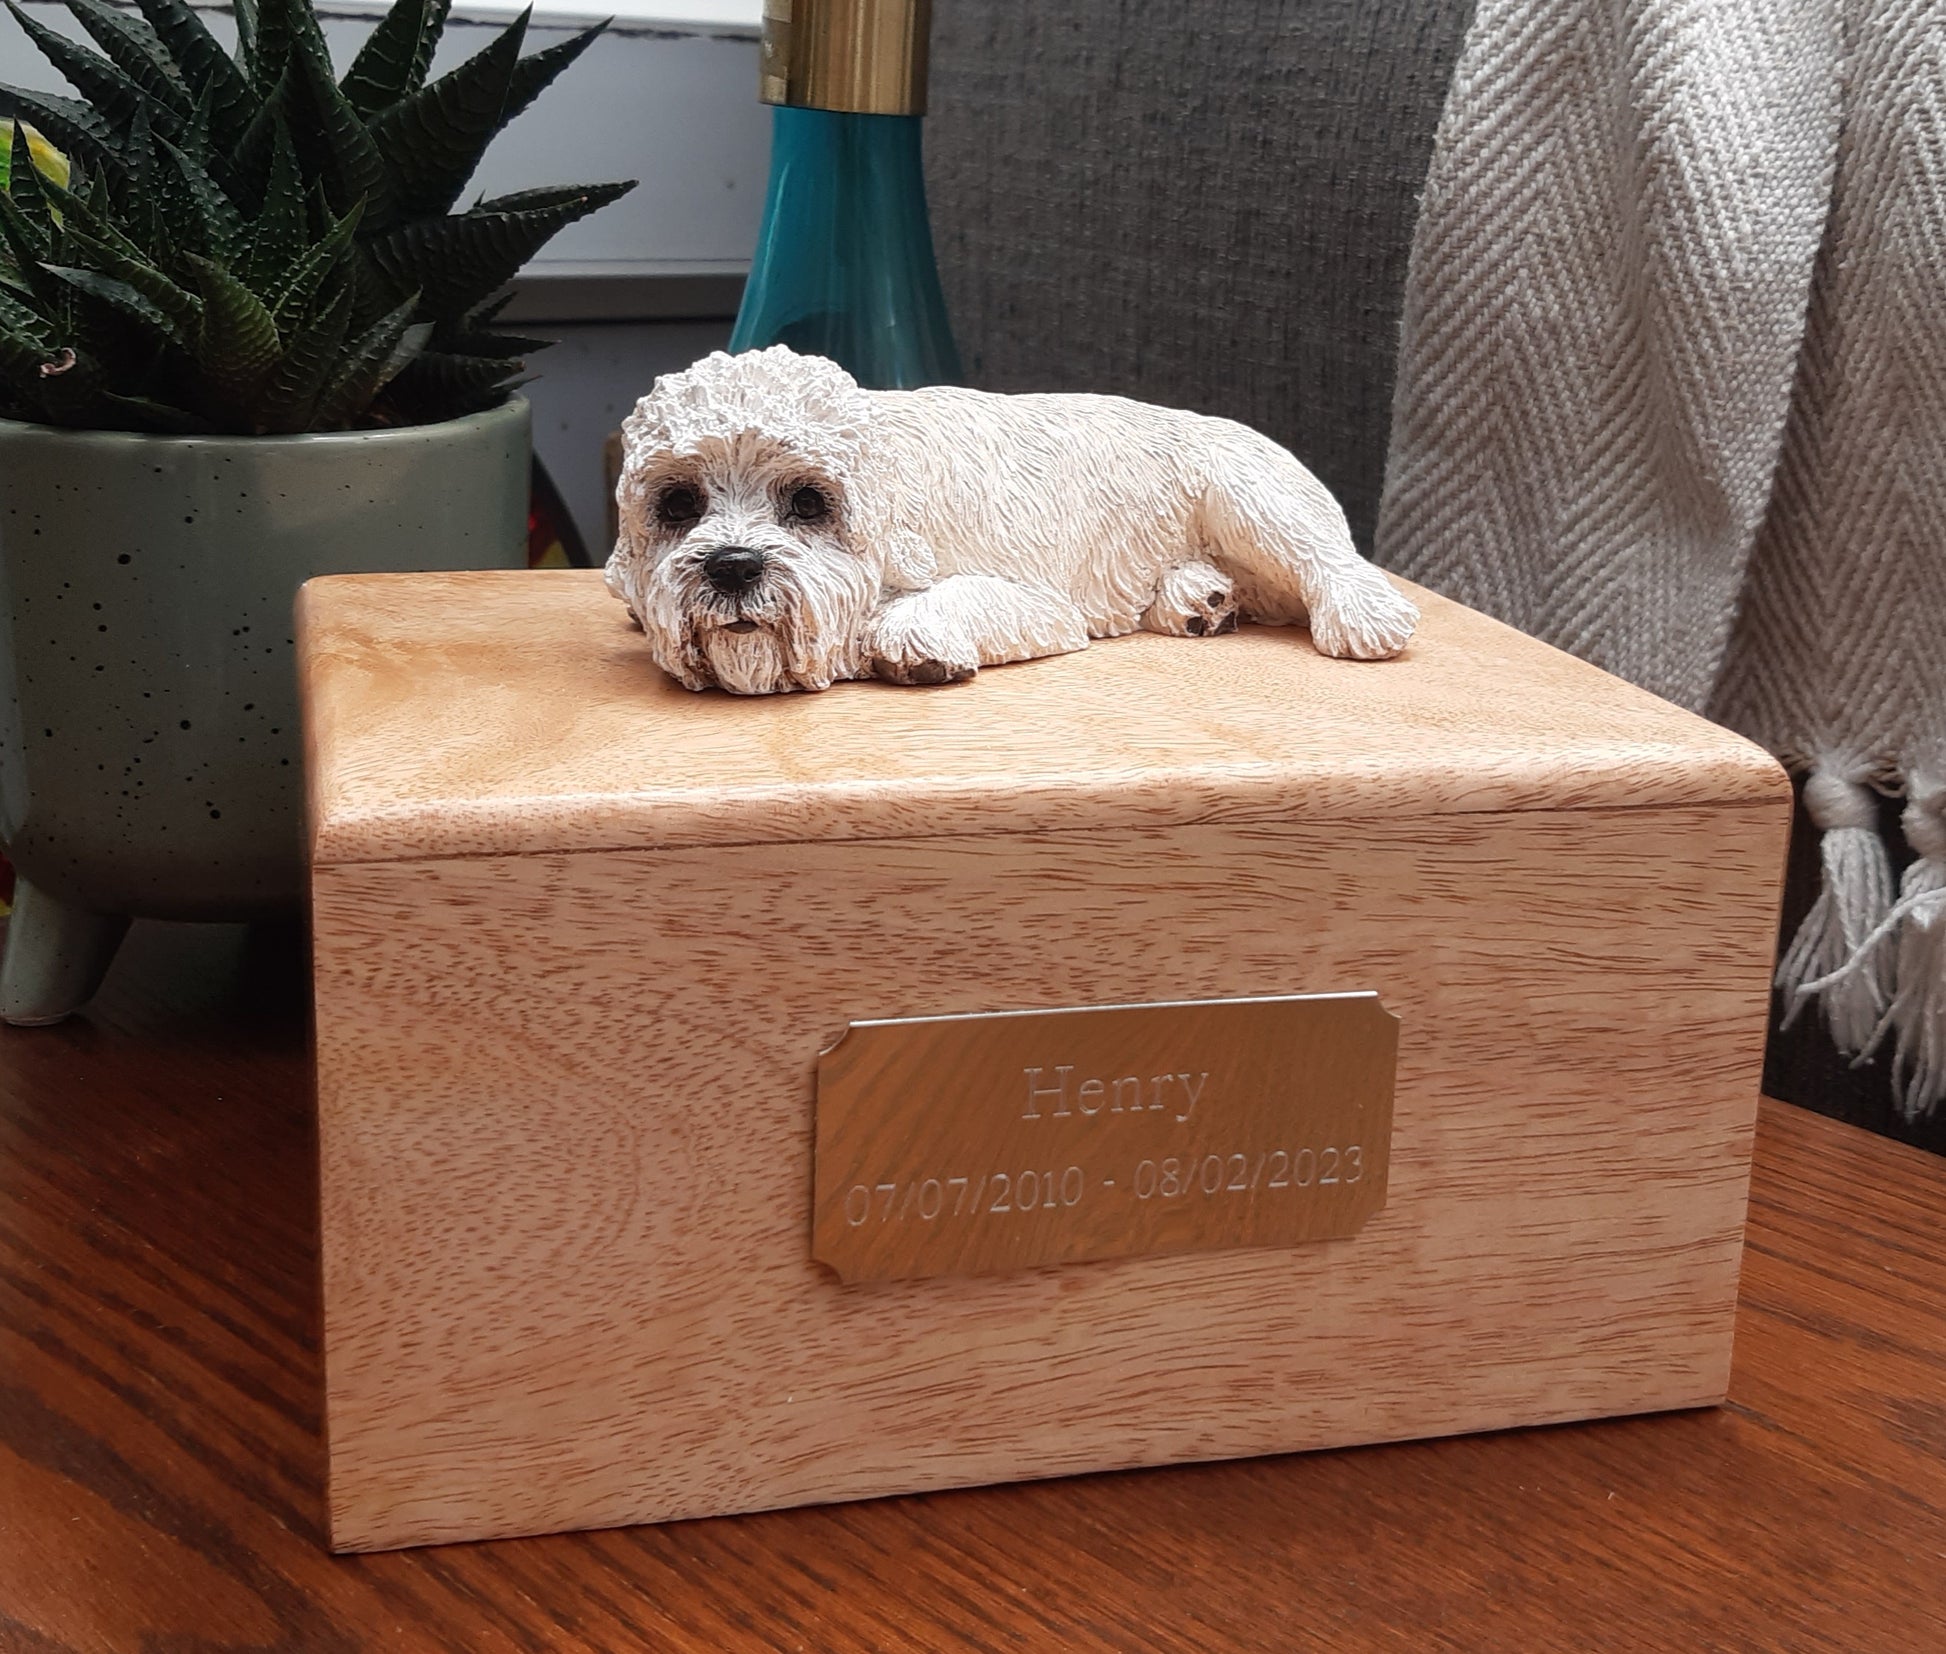 Mustard dandie dinmont terrier dog statue of wooden cremation casket urn